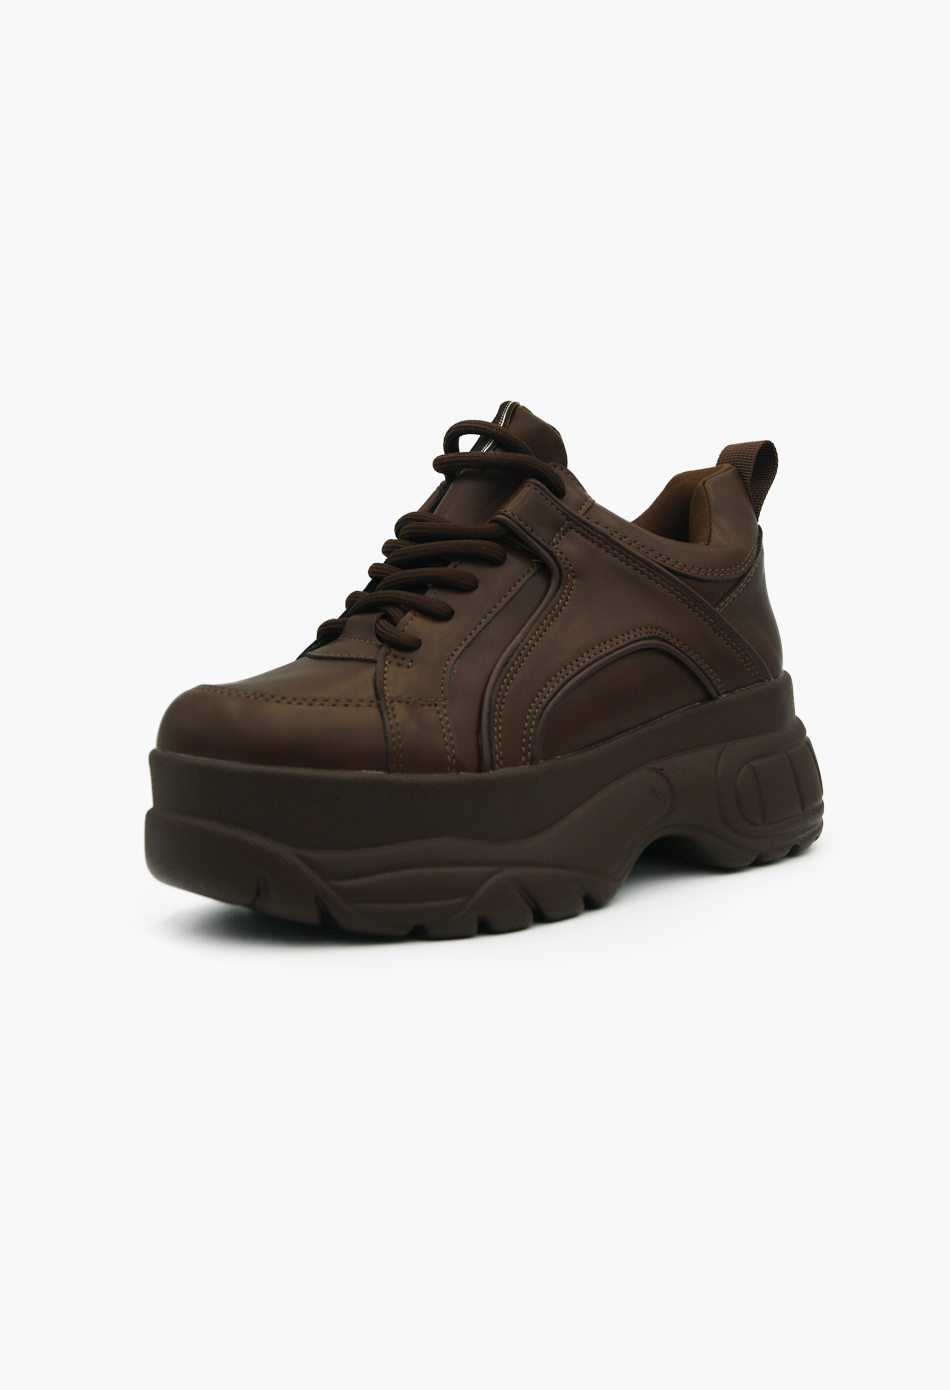 Γυναικεία Chunky Sneakers Wedges Καφέ / H9007-brown ΑΘΛΗΤΙΚΑ με ΠΛΑΤΦΟΡΜΑ joya.gr